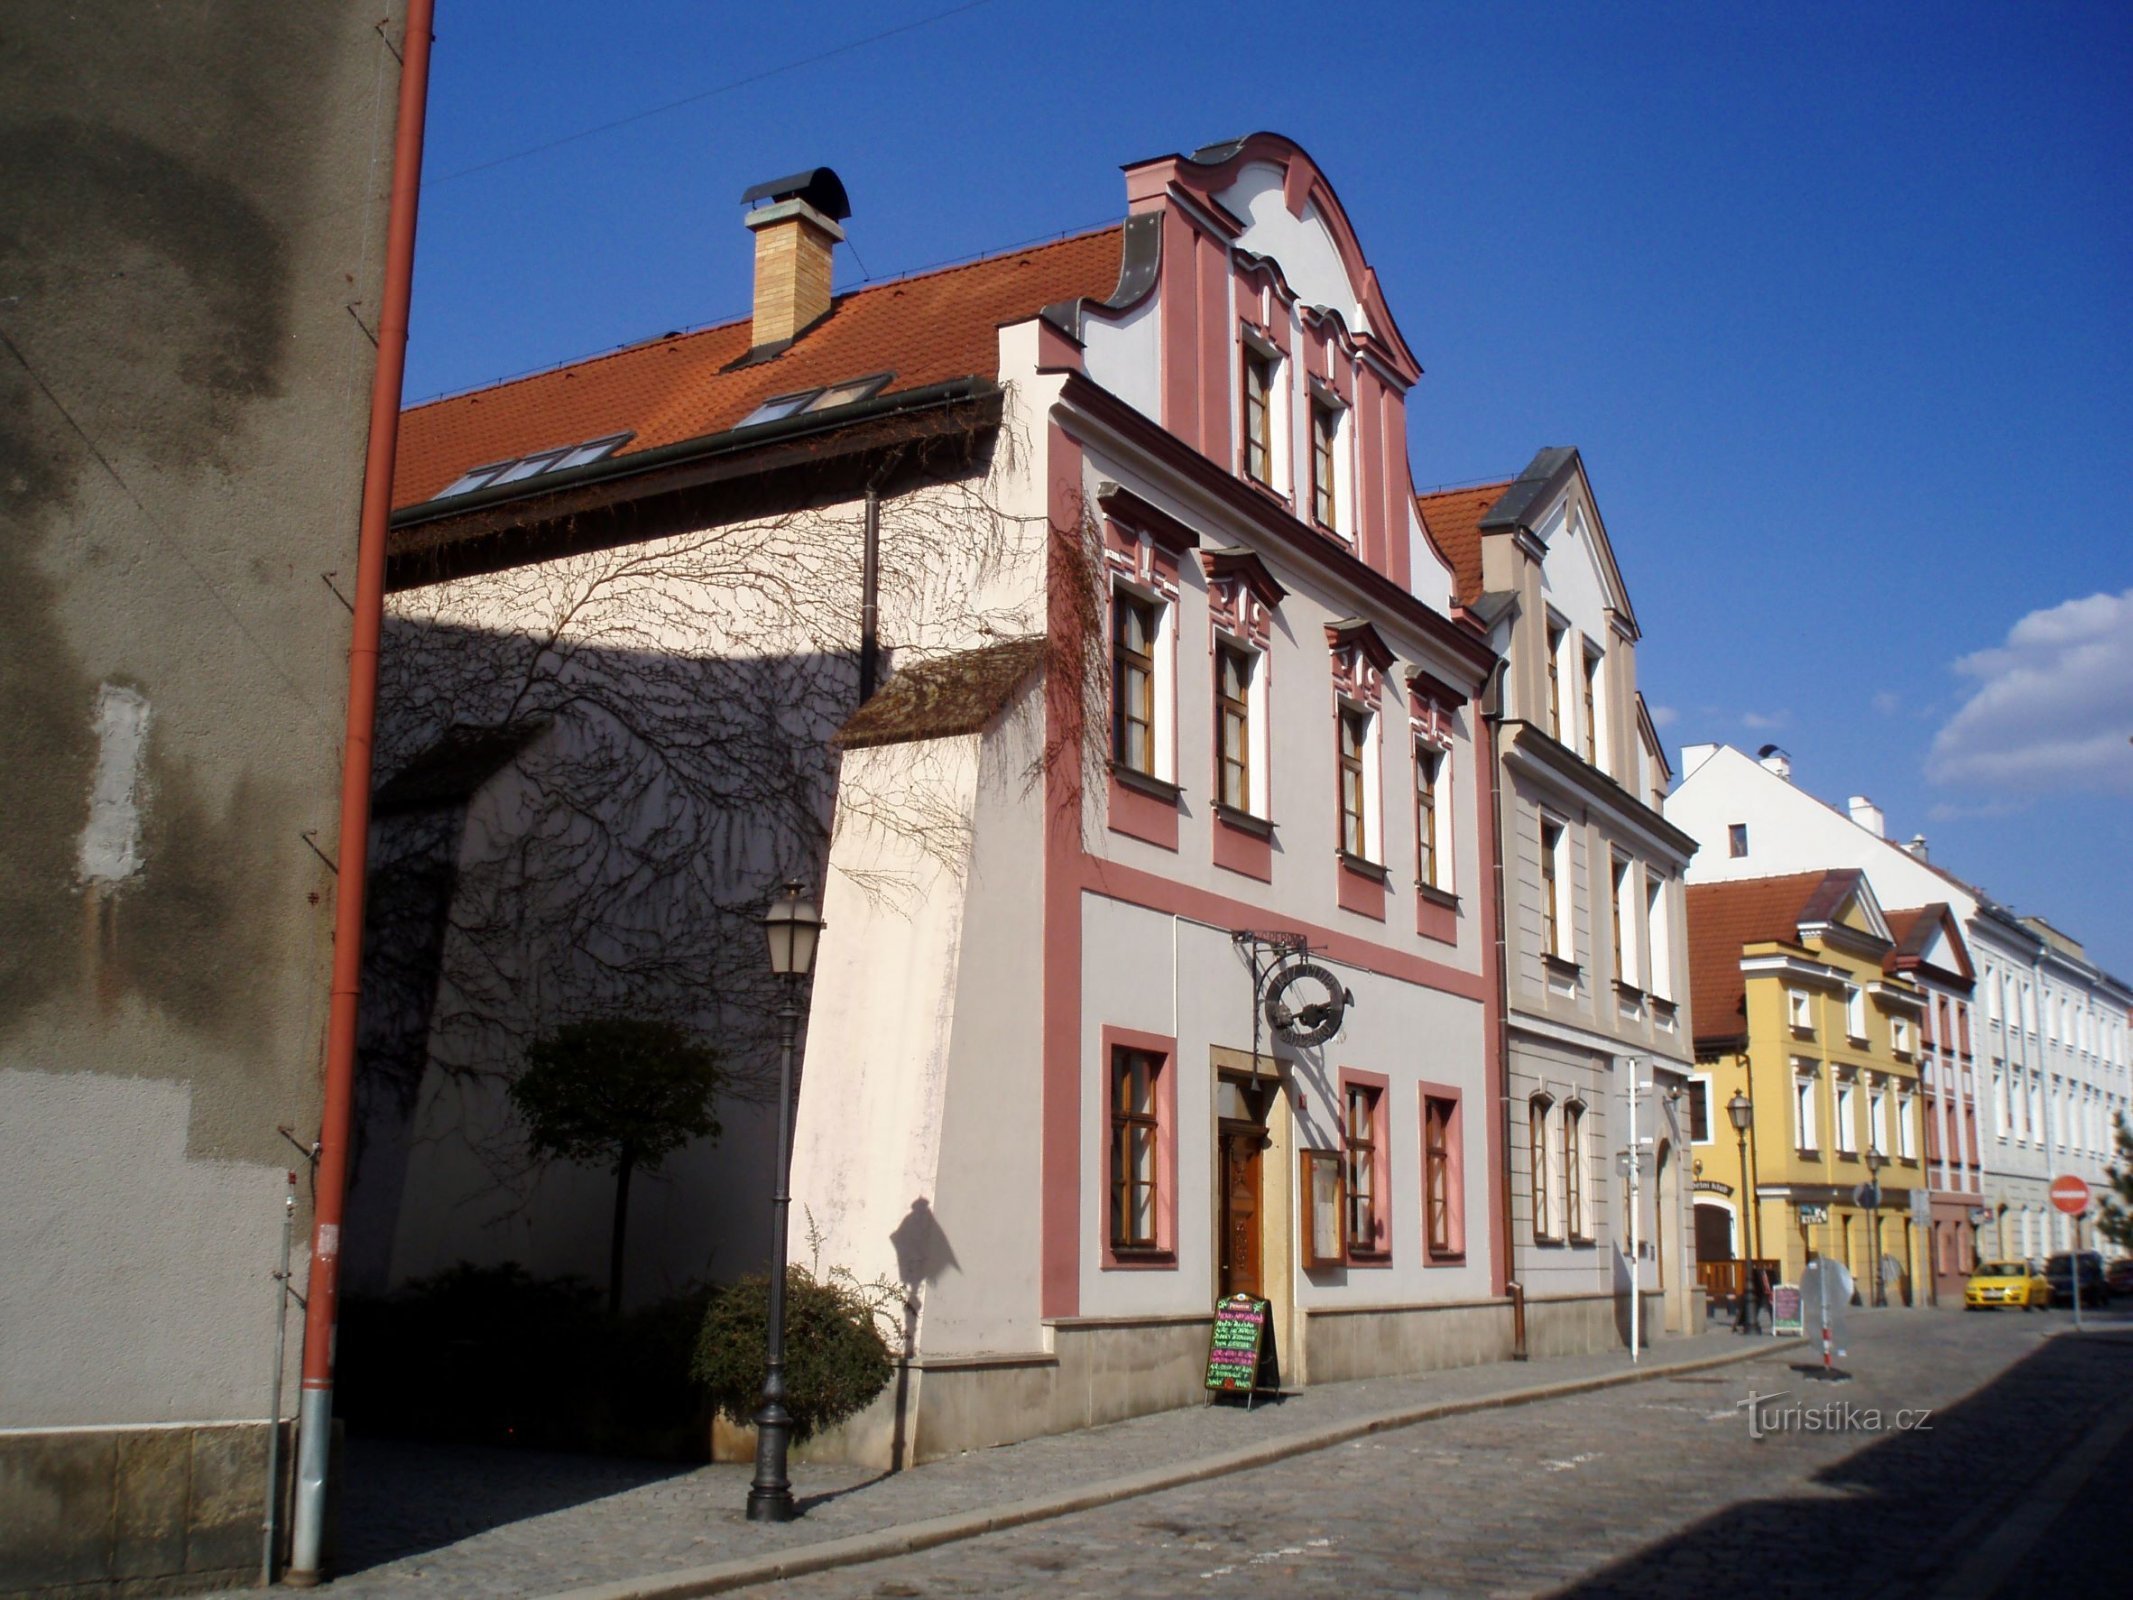 Dlouhá čp. 96-97 (Hradec Králové, 16.4.2011)